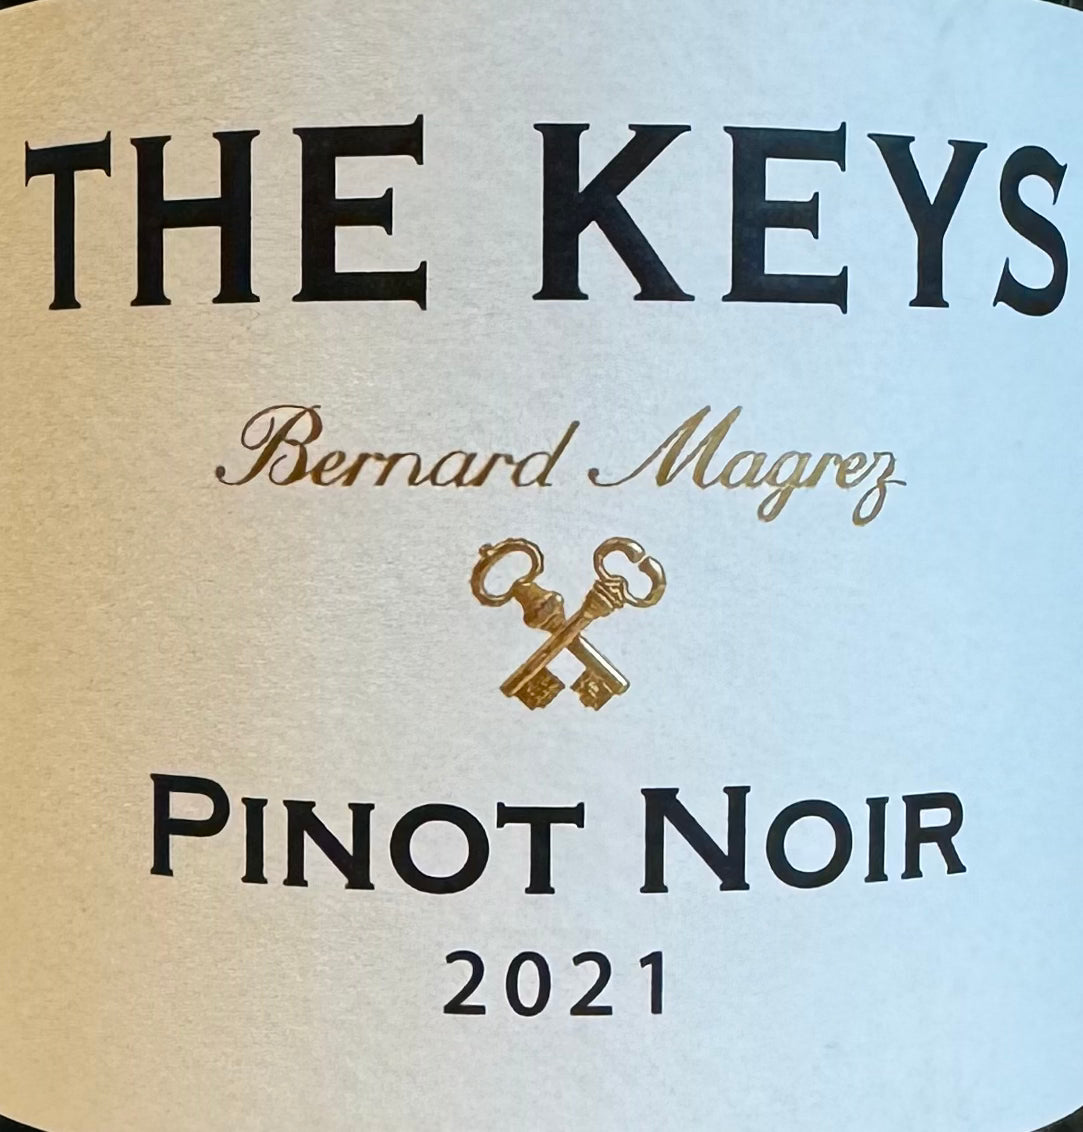 Bernard Magrez 'The Keys' - Pinot Noir